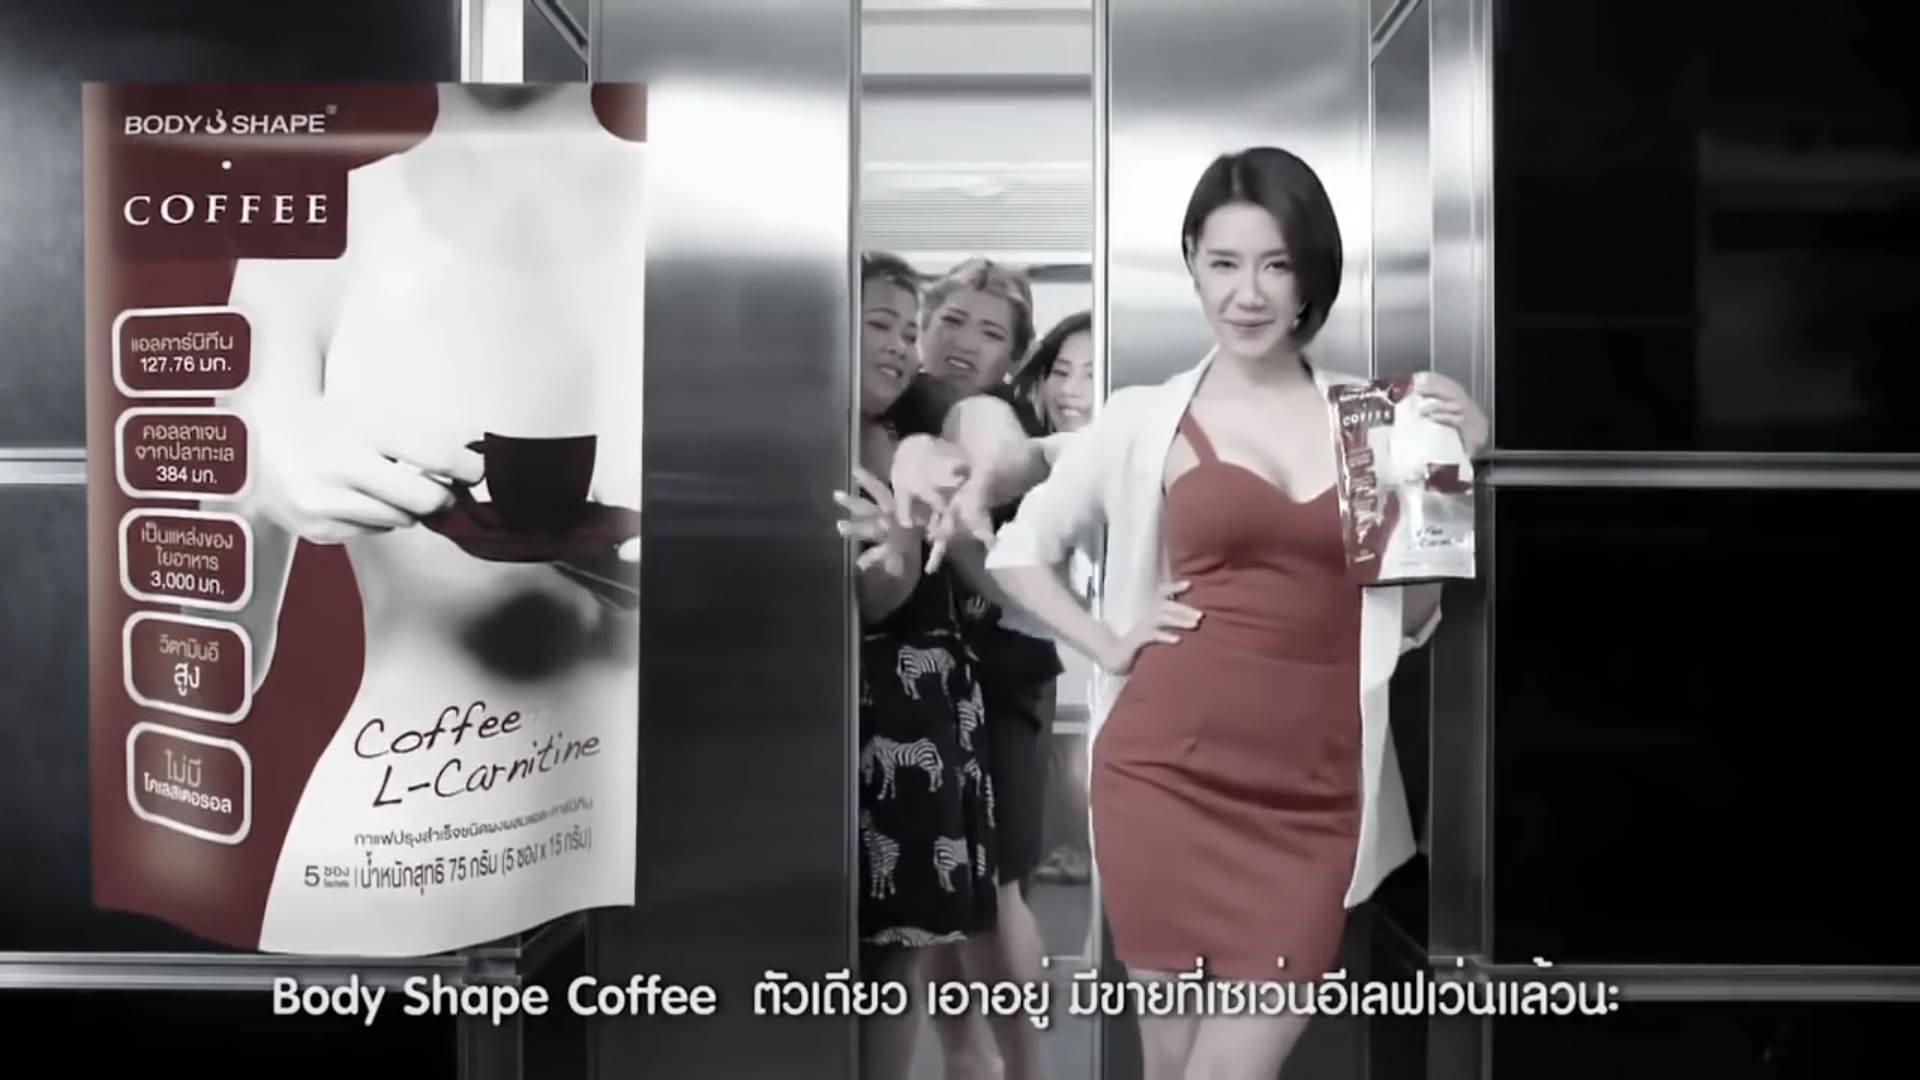 性感好笑的泰國咖啡广告 